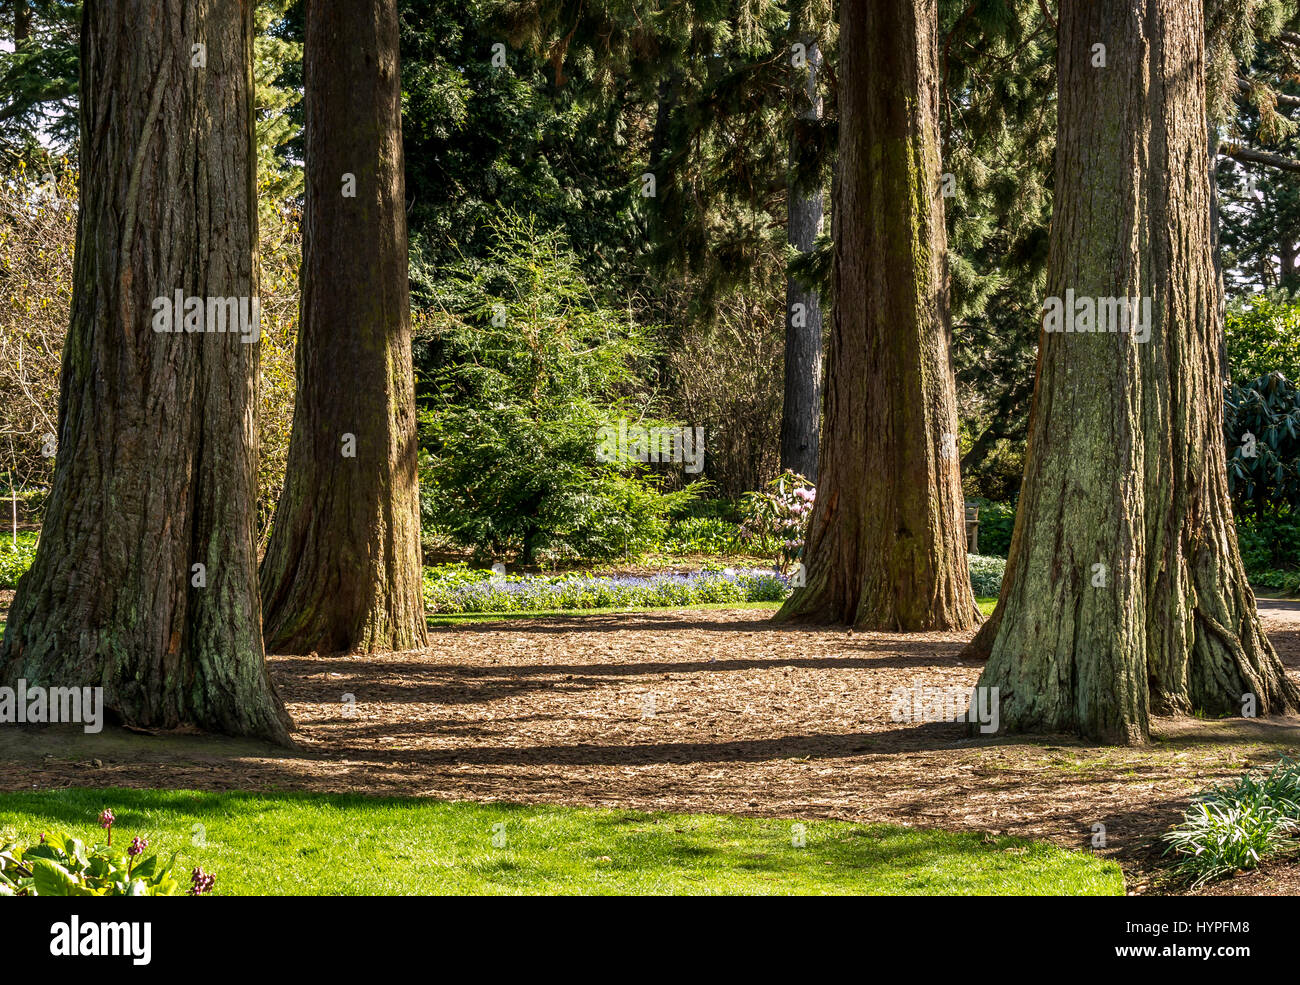 Ruhige sonnige Giant Sequoia Redwood Grove in den Royal Botanic Gardens, in Erinnerung an umweltschützer John Muir, Edinburgh, Schottland, Großbritannien Stockfoto